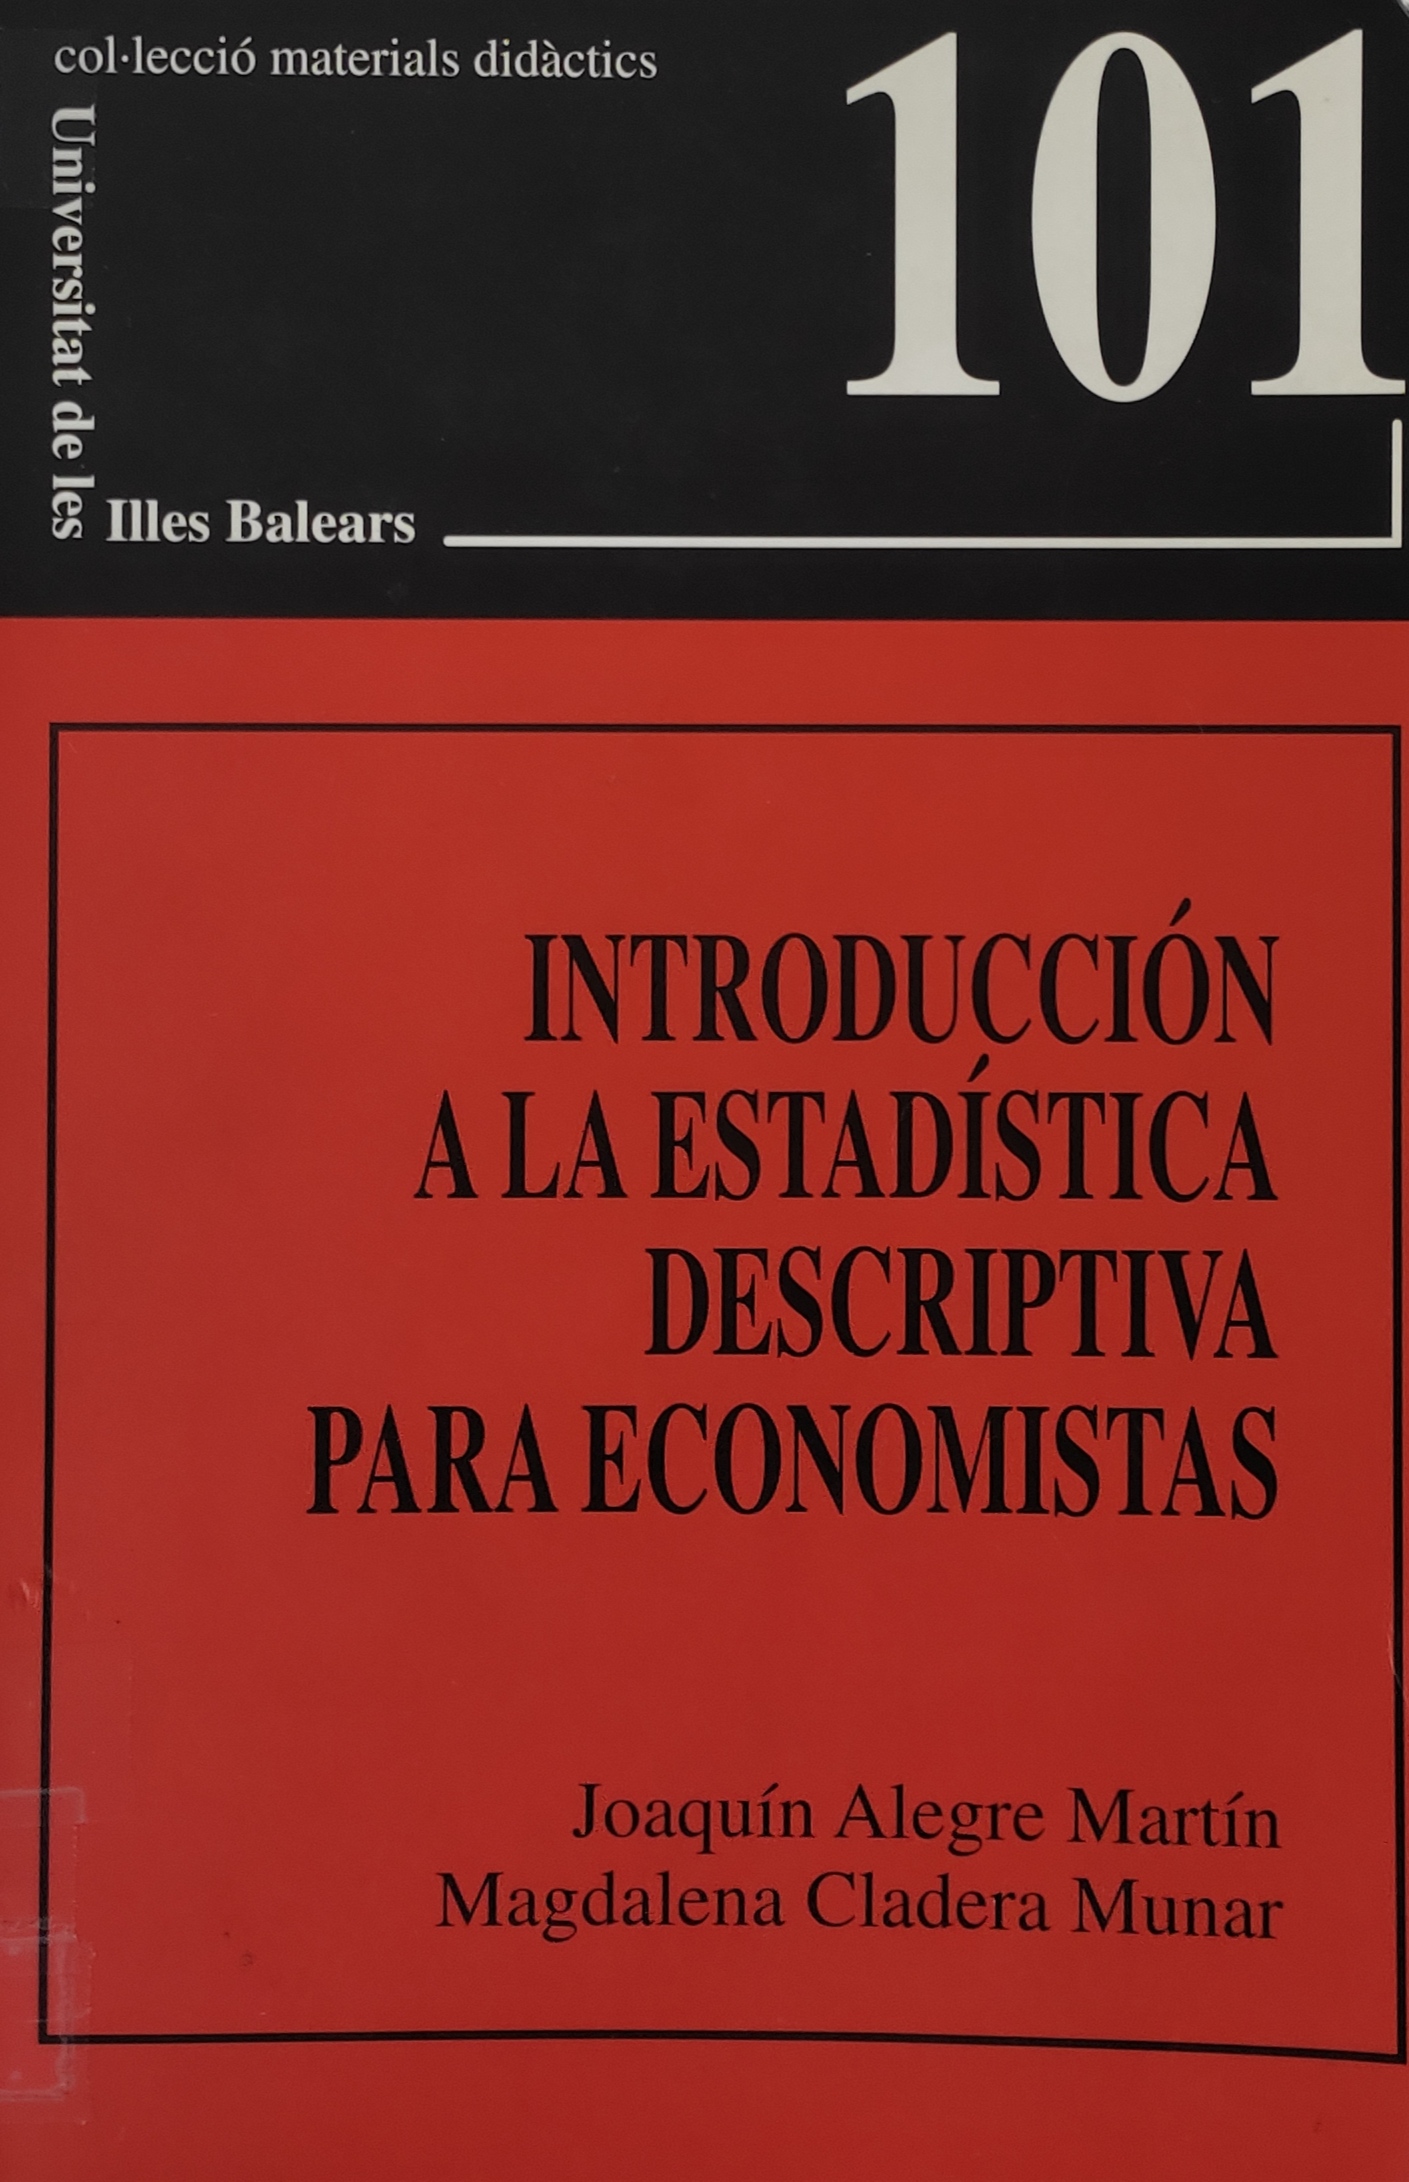 Imagen de portada del libro Introducción a la estadística descriptiva para economistas